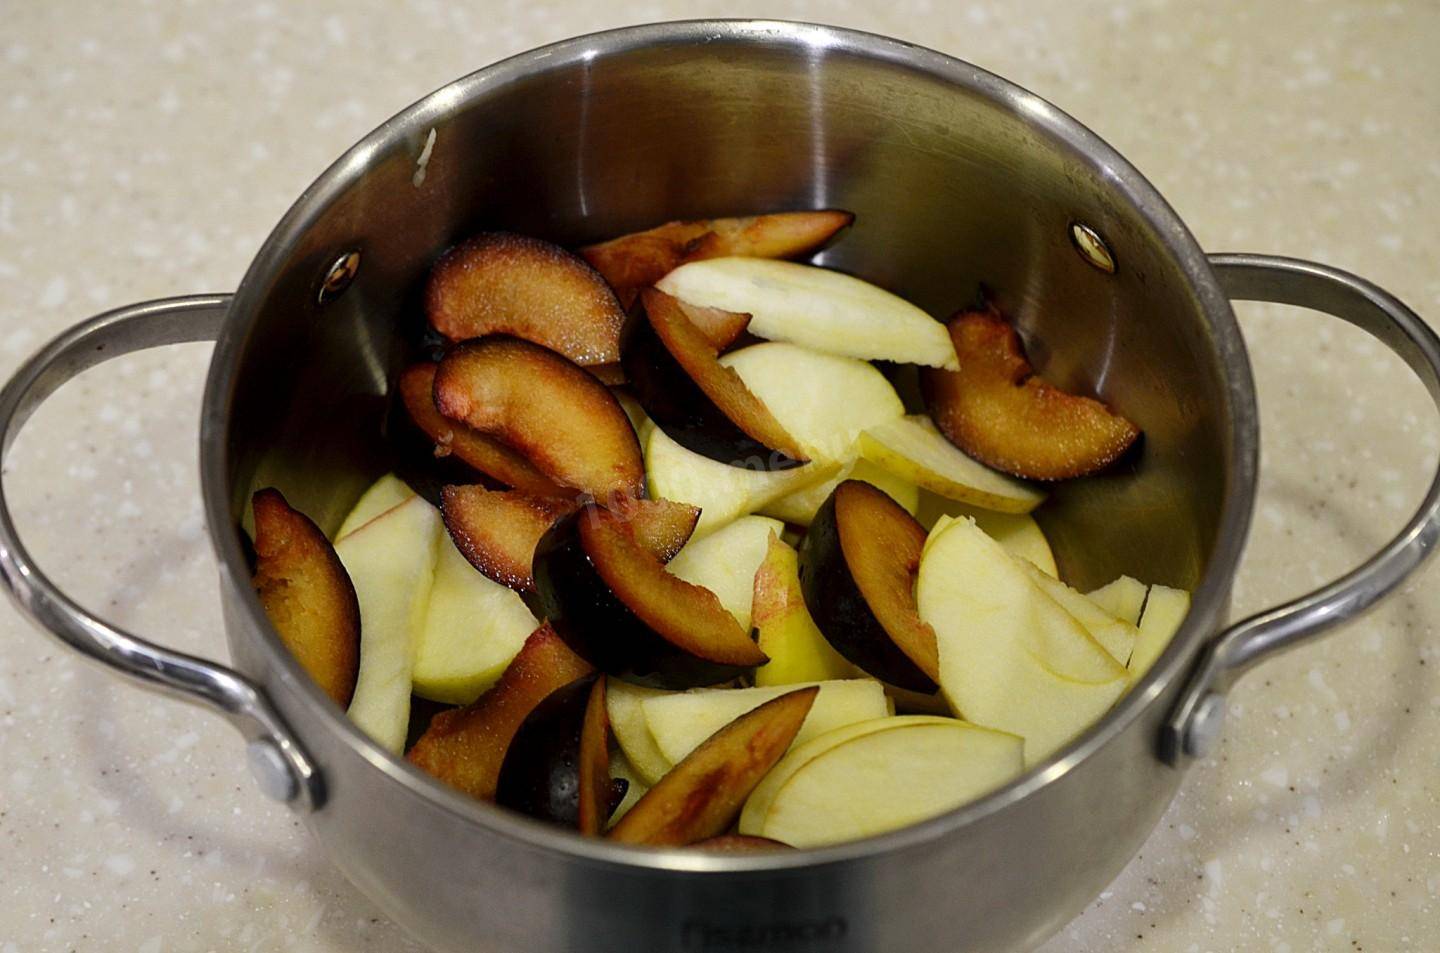 Компот из яблок на зиму - как приготовить пошагово по рецептам с фото и законсервировать в банках